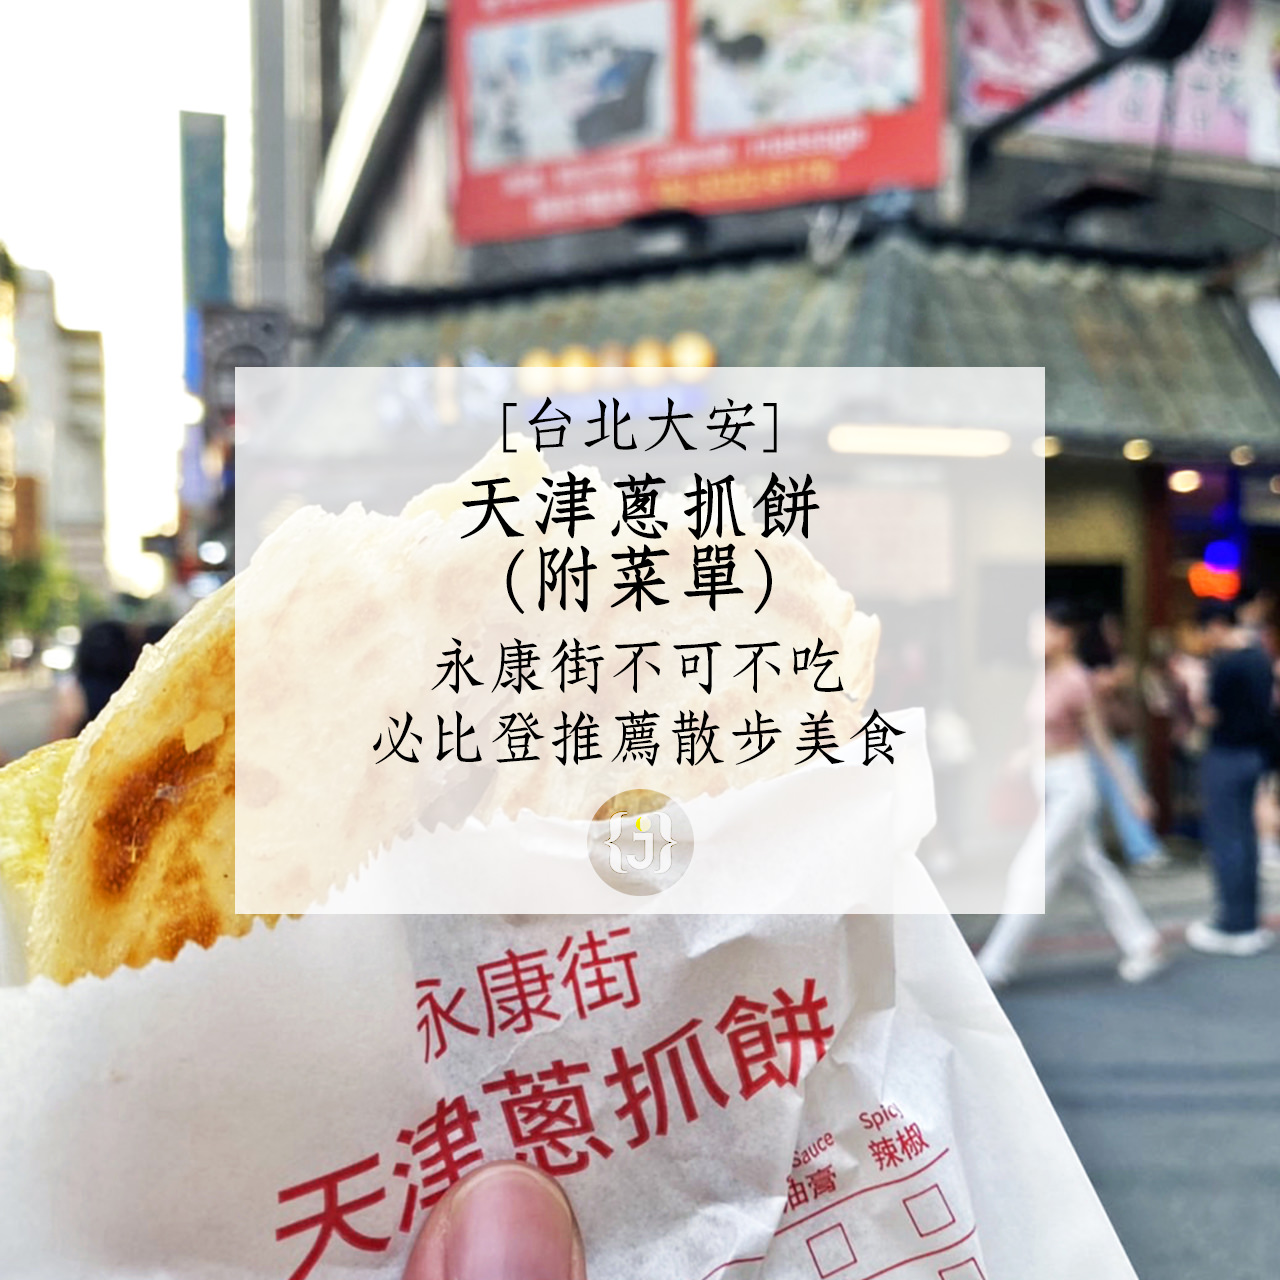 【台北大安】天津蔥抓餅附菜單永康街不可不吃 必比登推薦散步美食